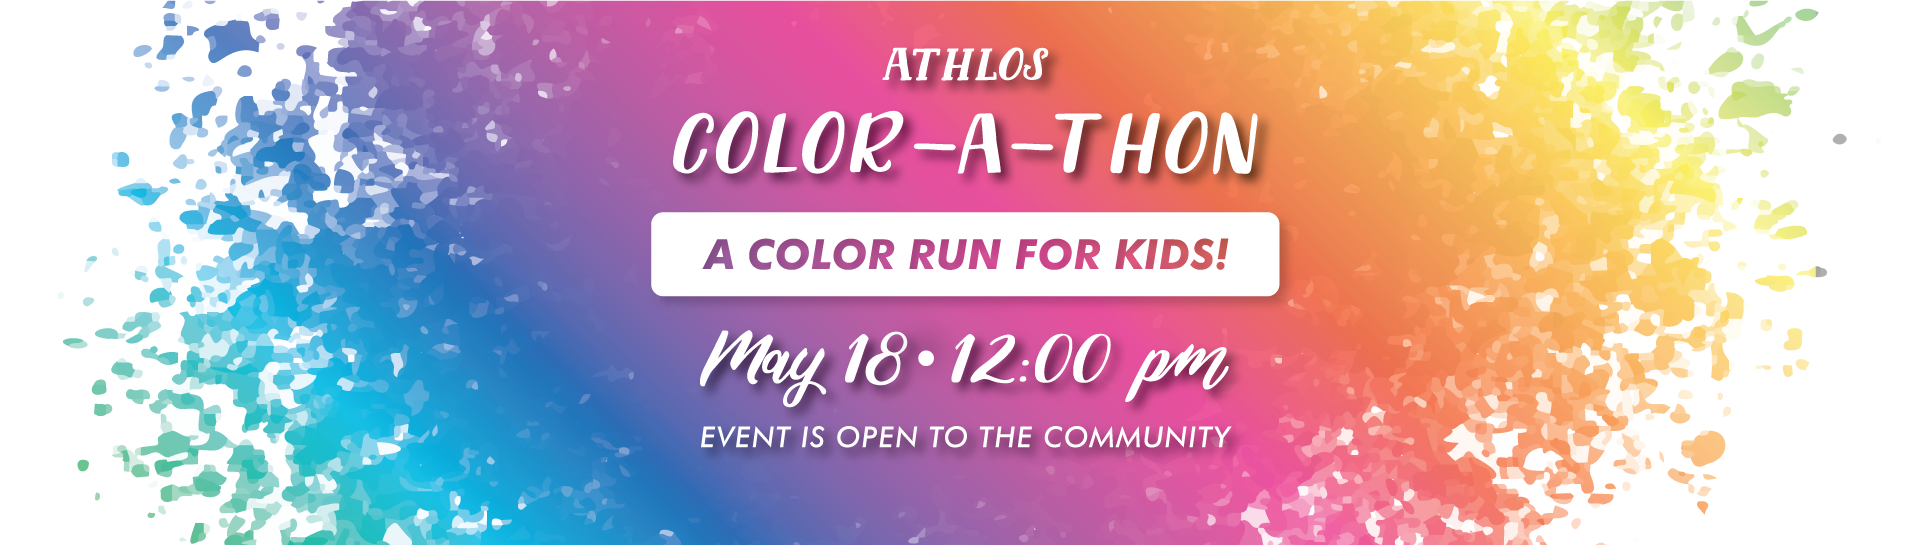 Athlos Color-a-Thon